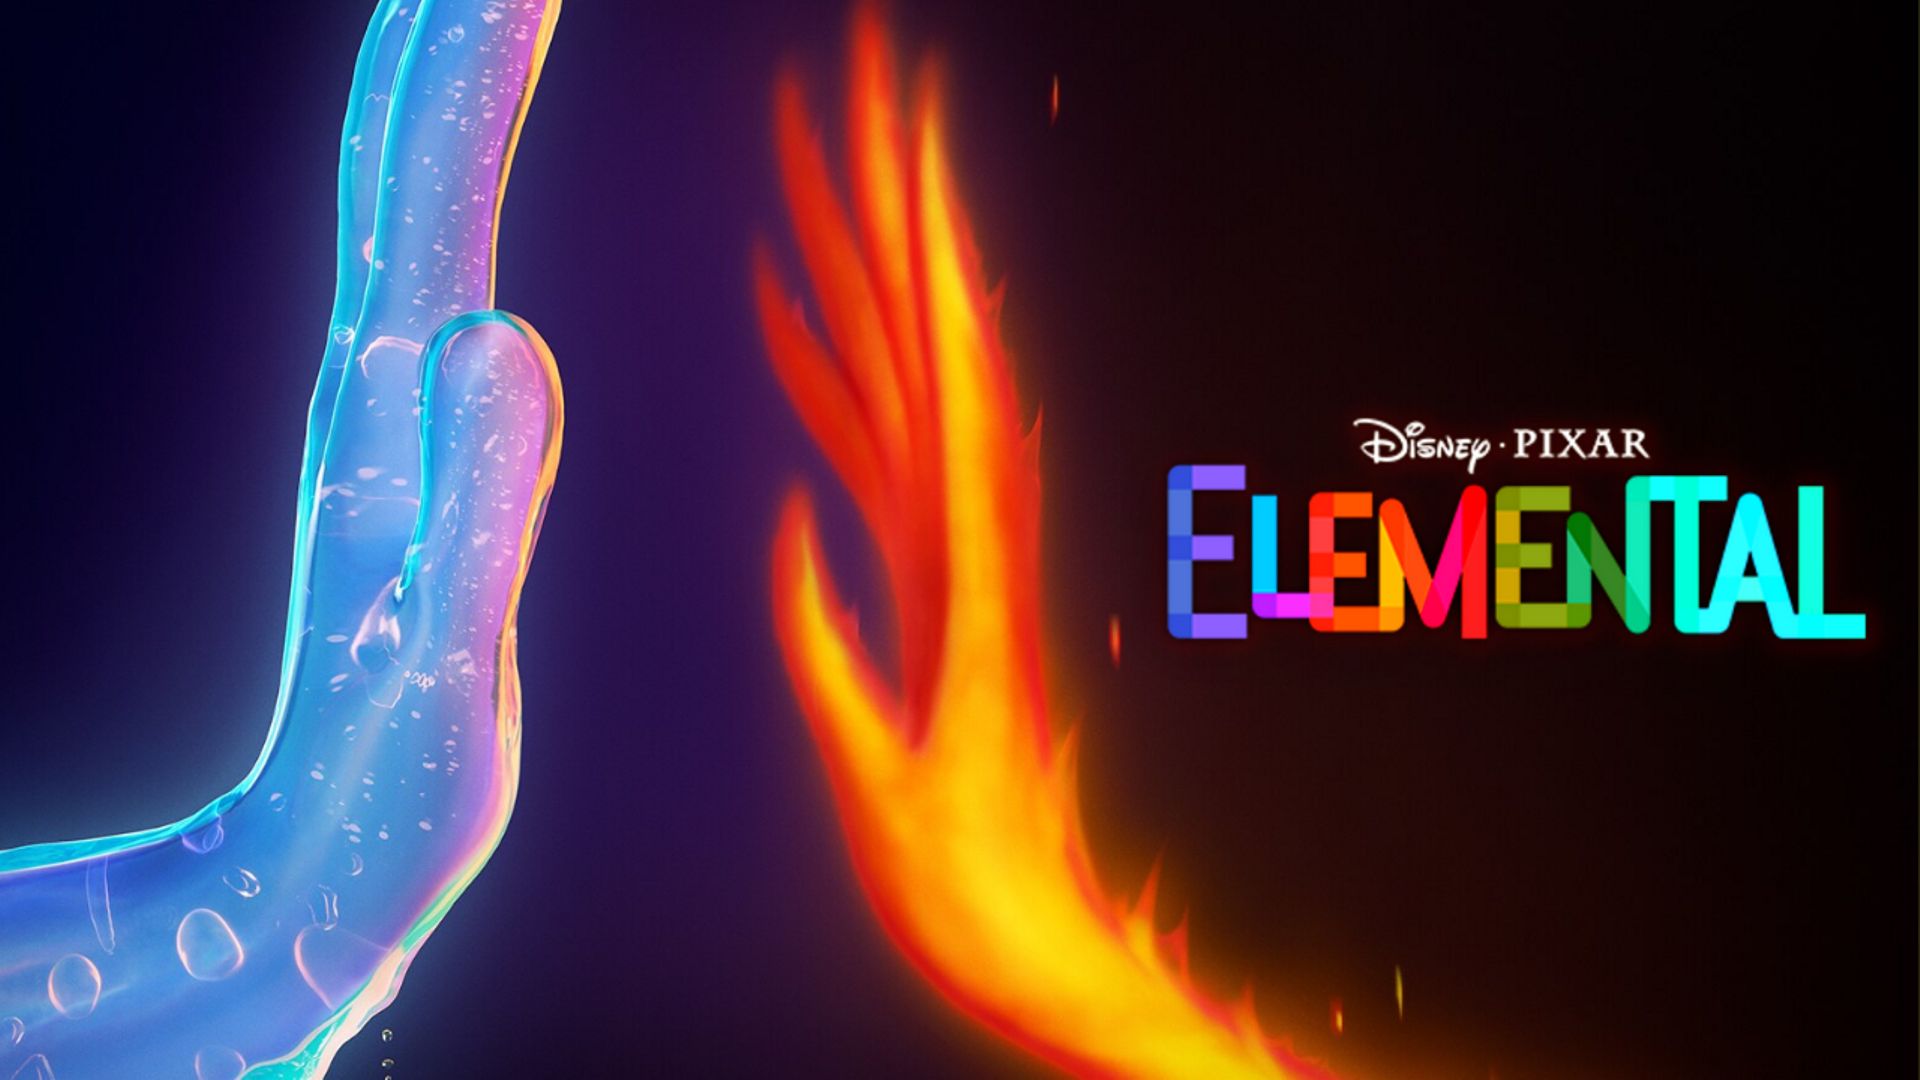 ELEMENTAIRE - Disney Cinéma - L'histoire du film - Disney Pixar